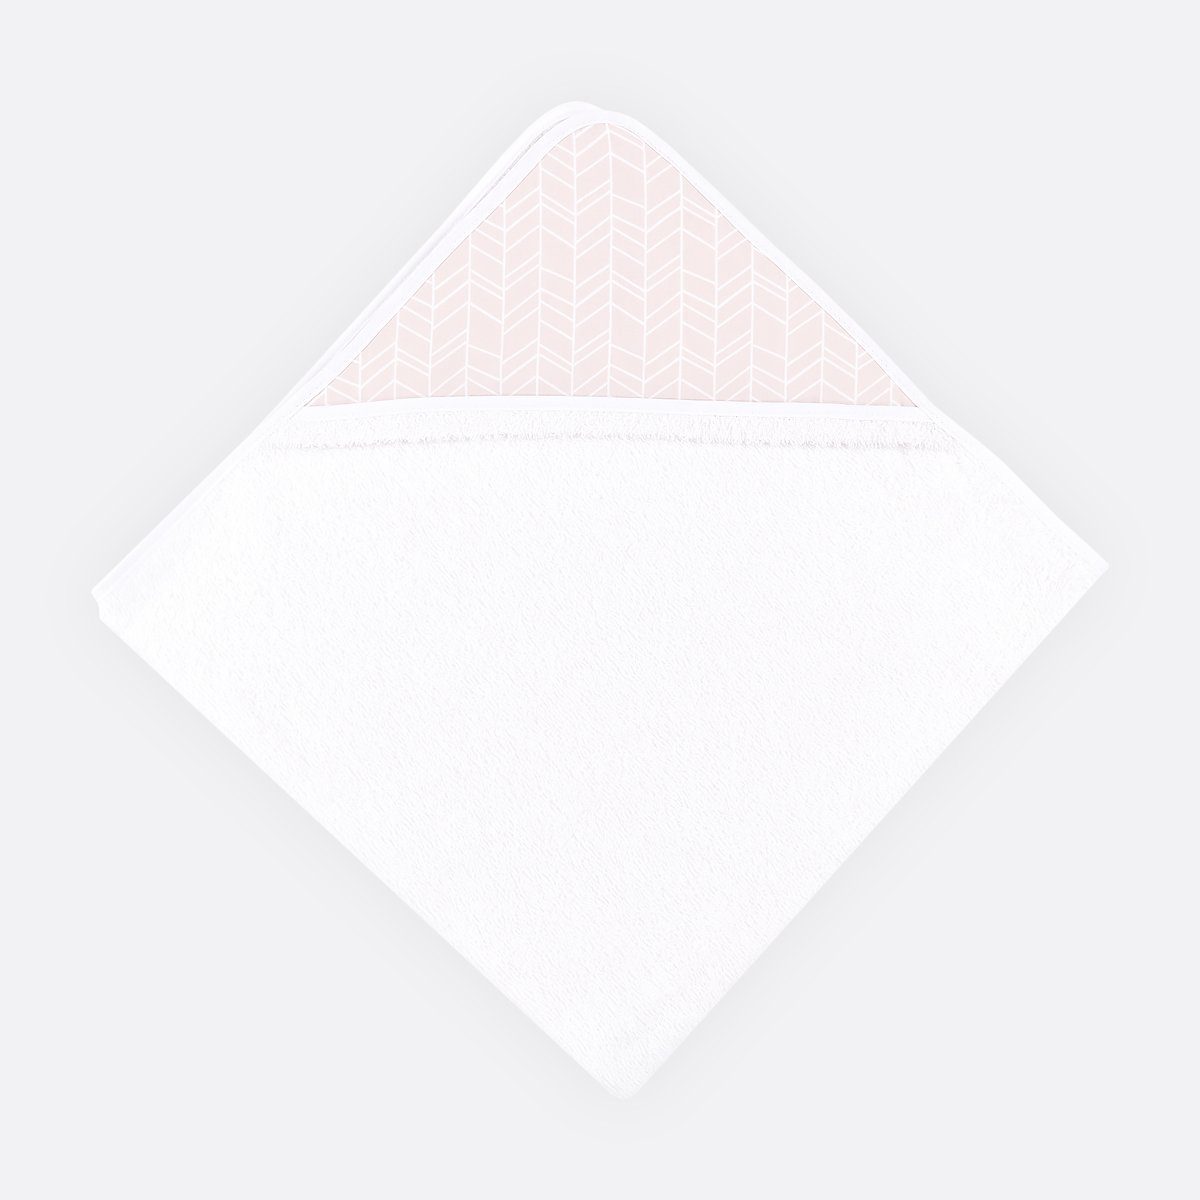 Muster weiße Schrägband weiches extra Baumwolle, Rosa, dickes KraftKids Frottee, 100% eingefasst und auf Feder mit Kapuzenhandtuch